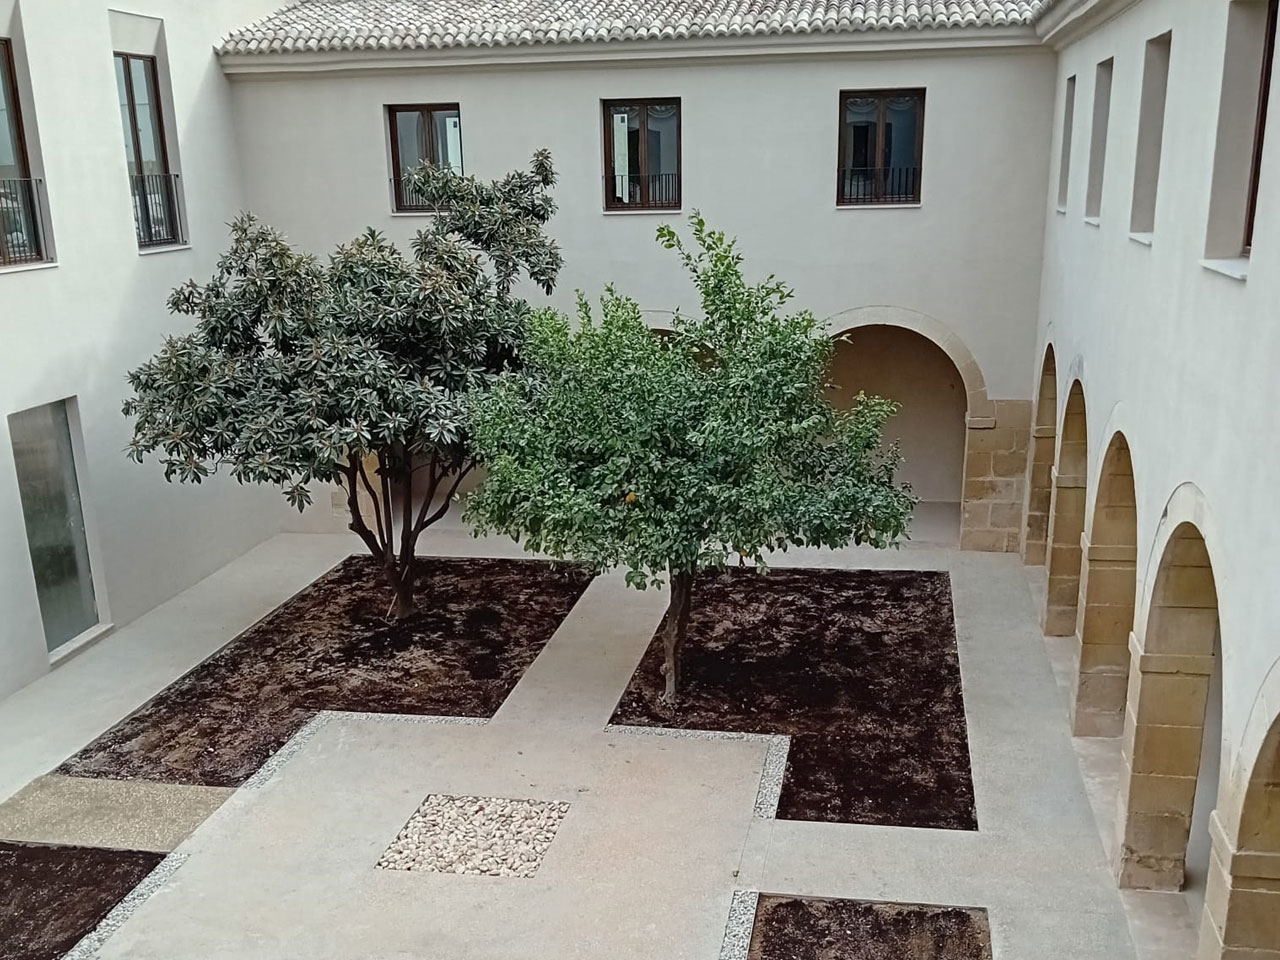 Orthem concluye la primera fase de la rehabilitación de la antigua Casa de Misericordia del conjunto de las Cigarreras, en Alicante